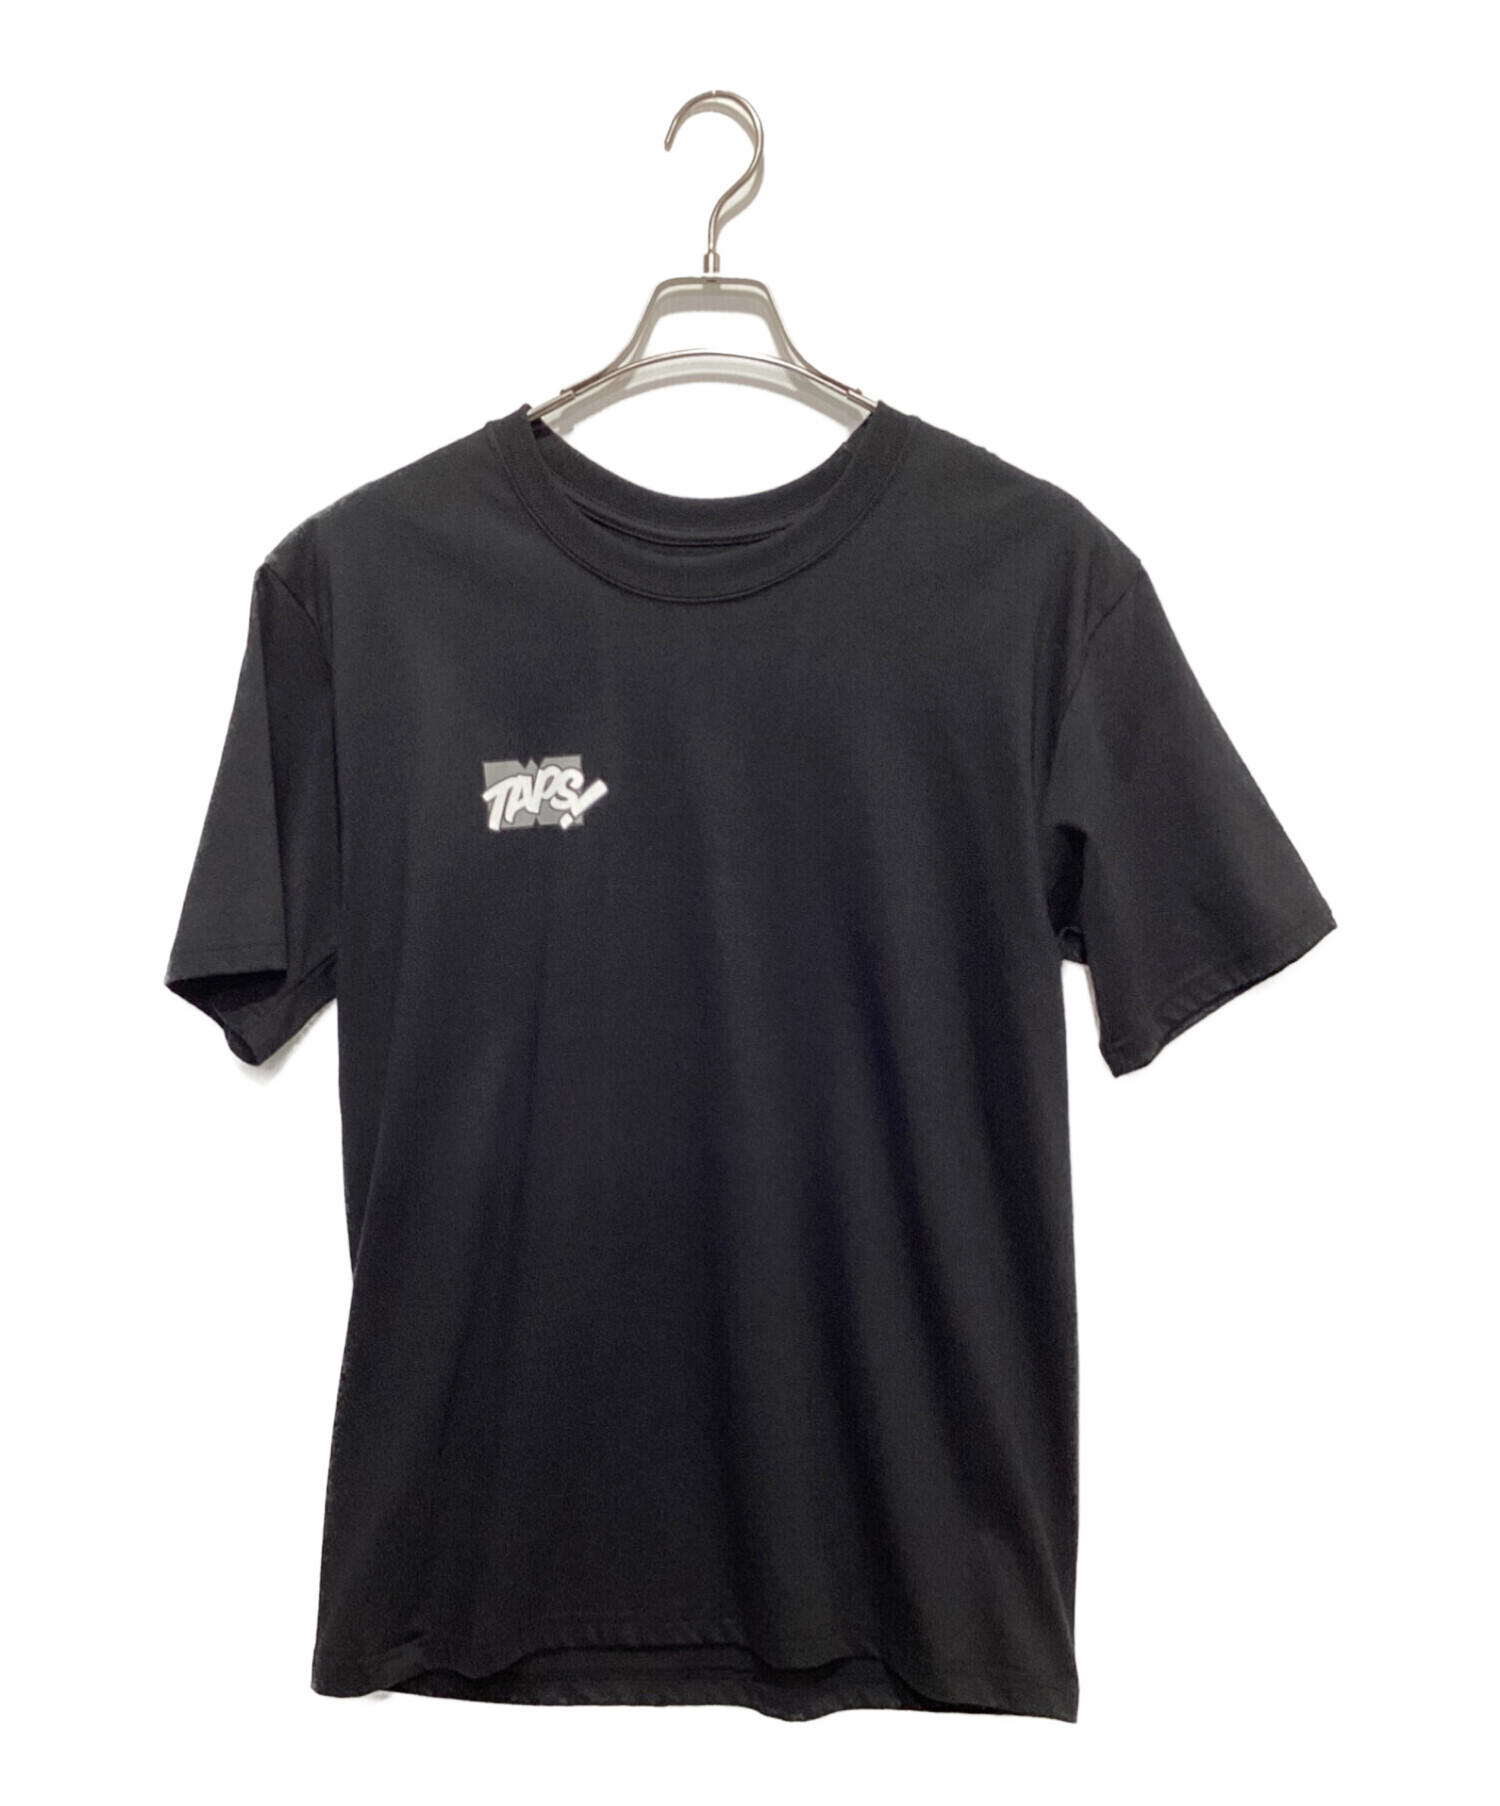 WTAPS (ダブルタップス) プリントTシャツ ブラック サイズ:2